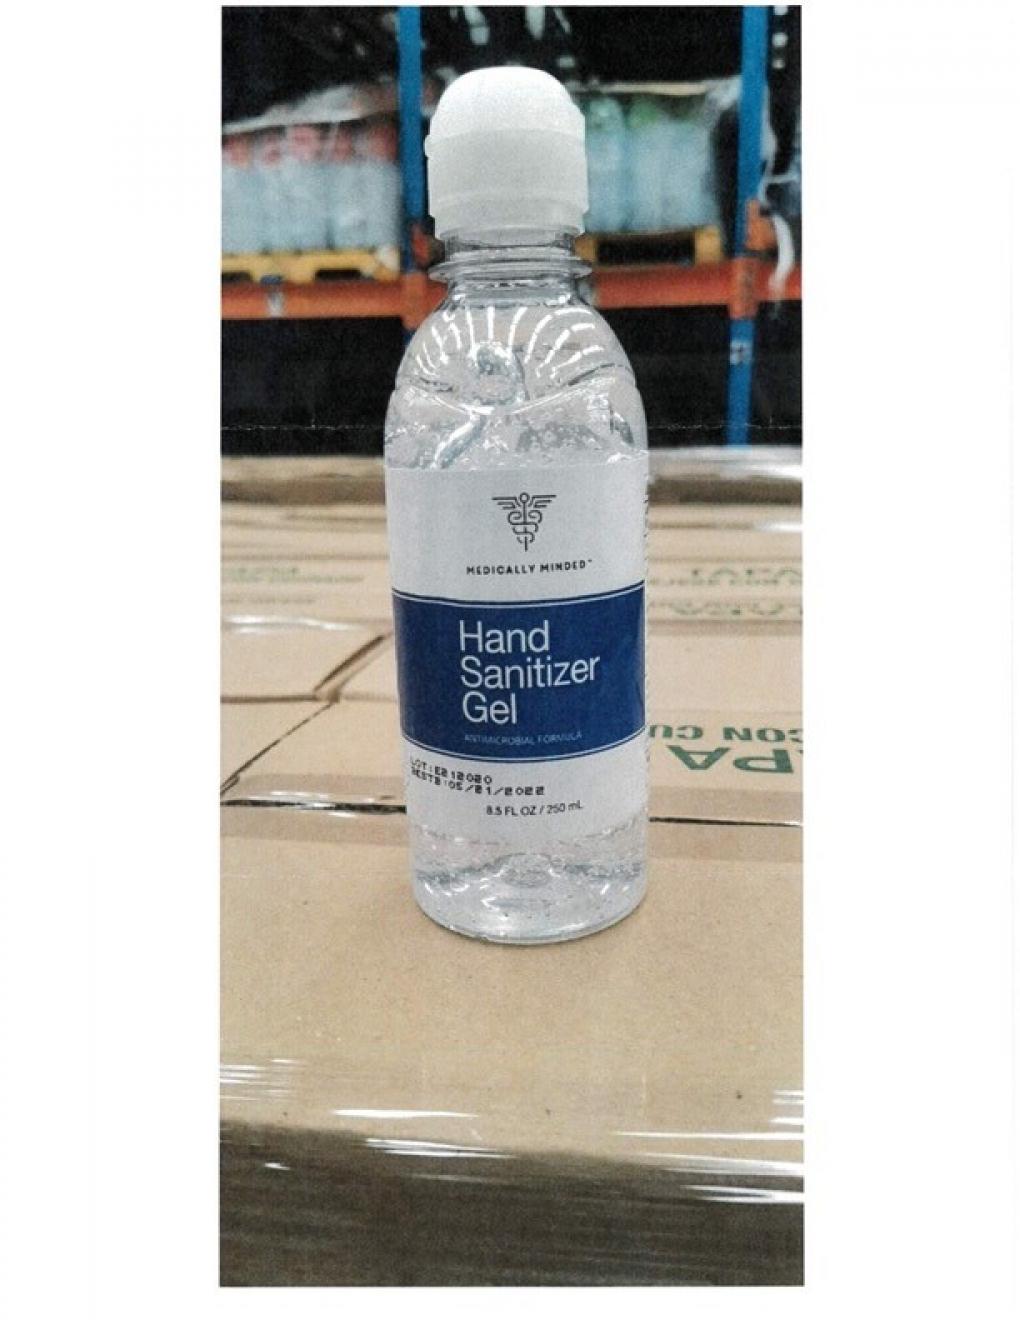 Recalled hand sanitizer